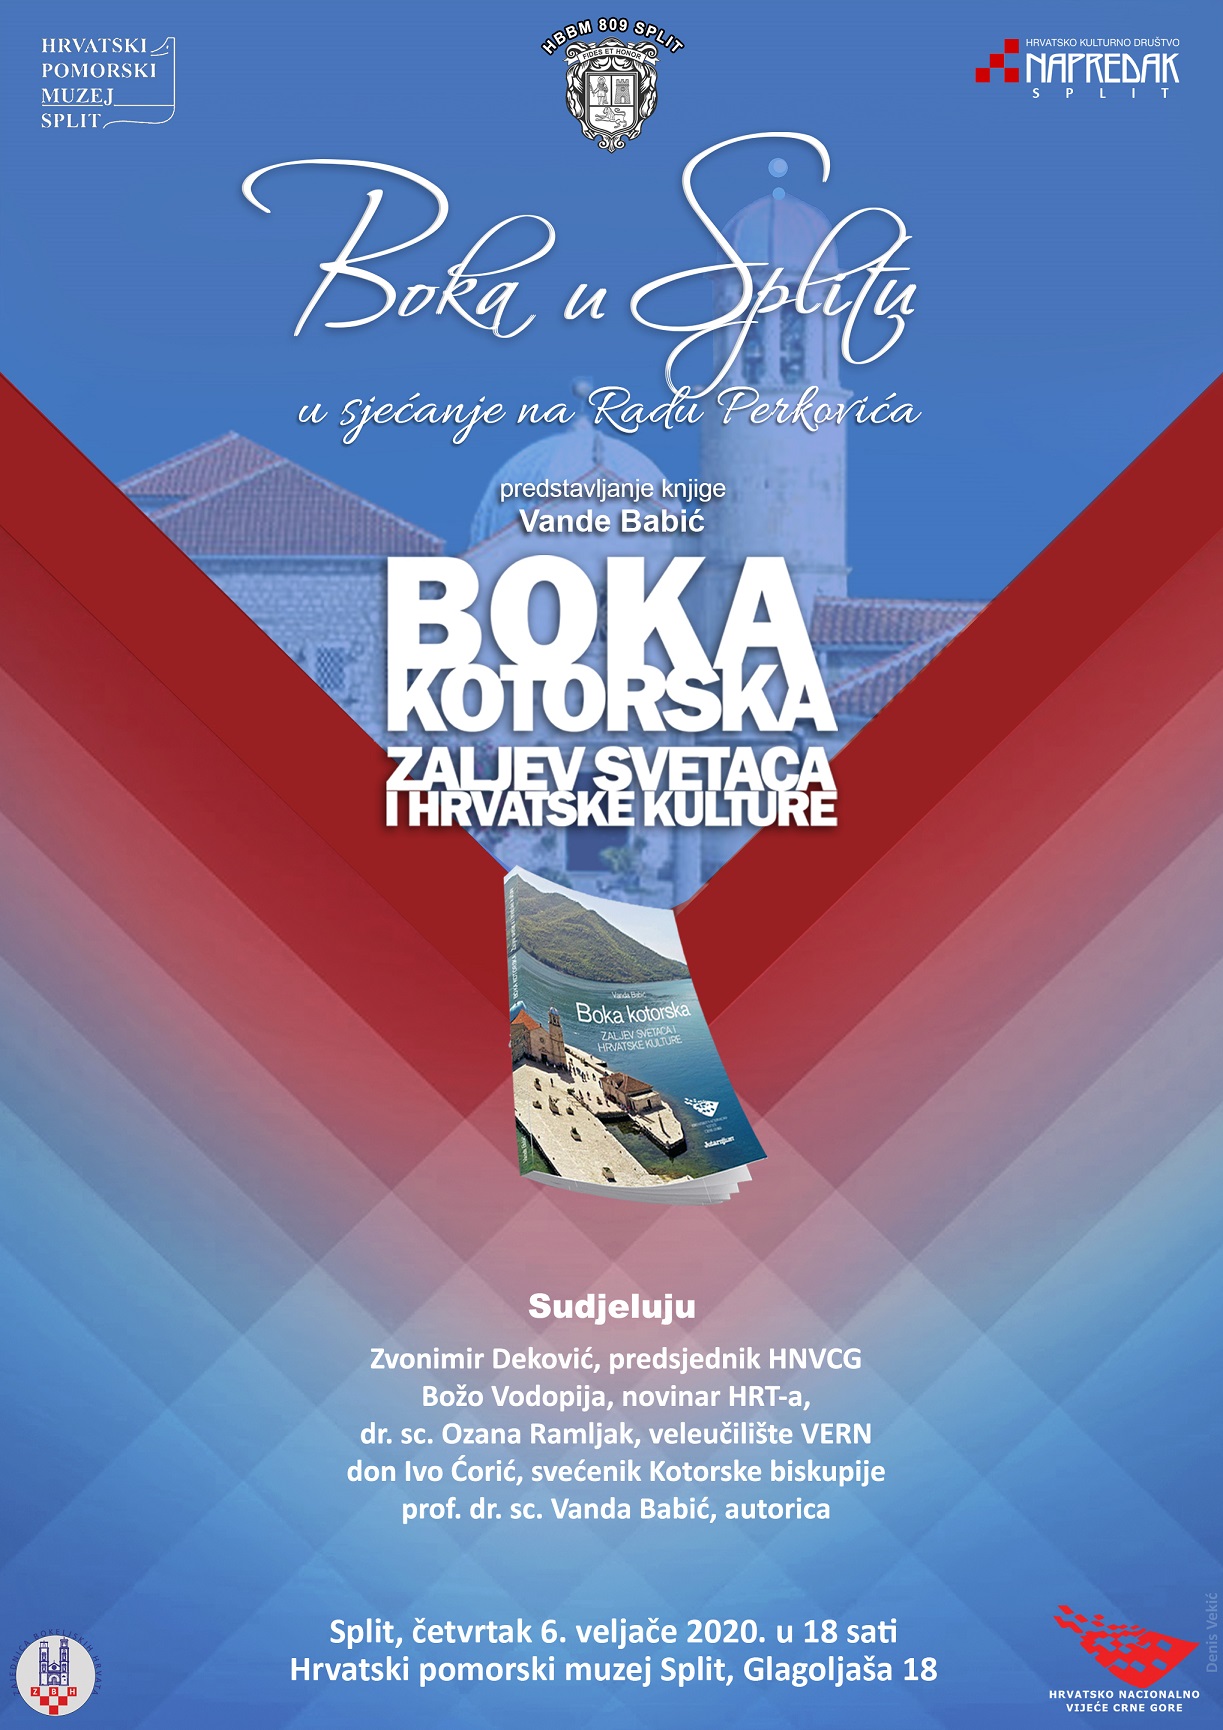 BOKA SPLIT PLAKAT 6-2-2020 Boka kotorska zaljev svetaca i hrvatske kulture